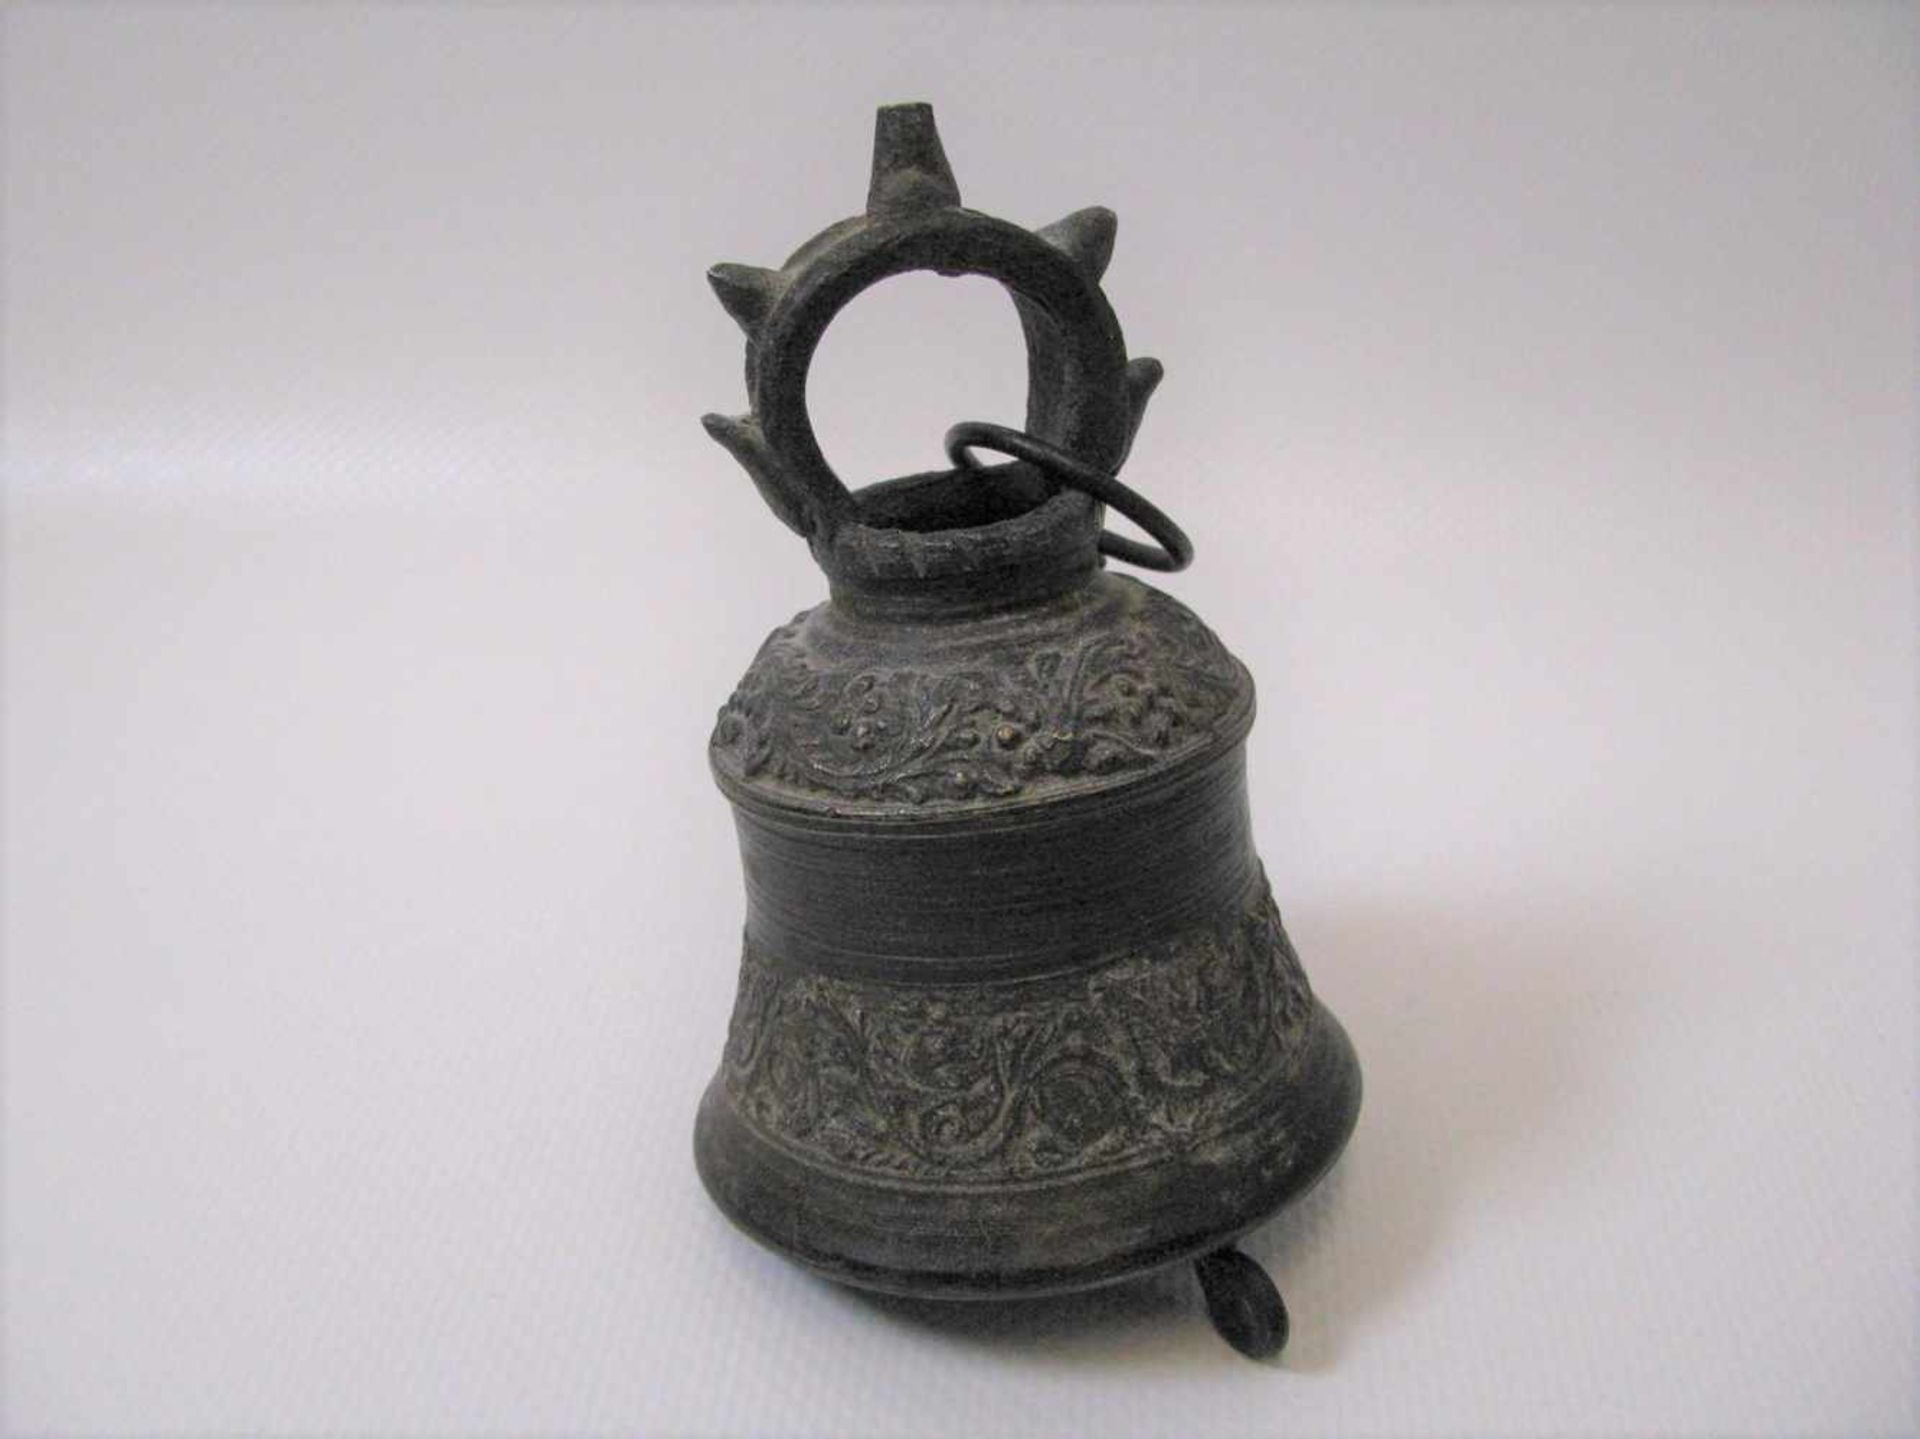 Glocke, Tibet/Nepal, antik, Bronze mit reicher Verzierung, 9 x 6 cm.- - -19.00 % buyer's premium